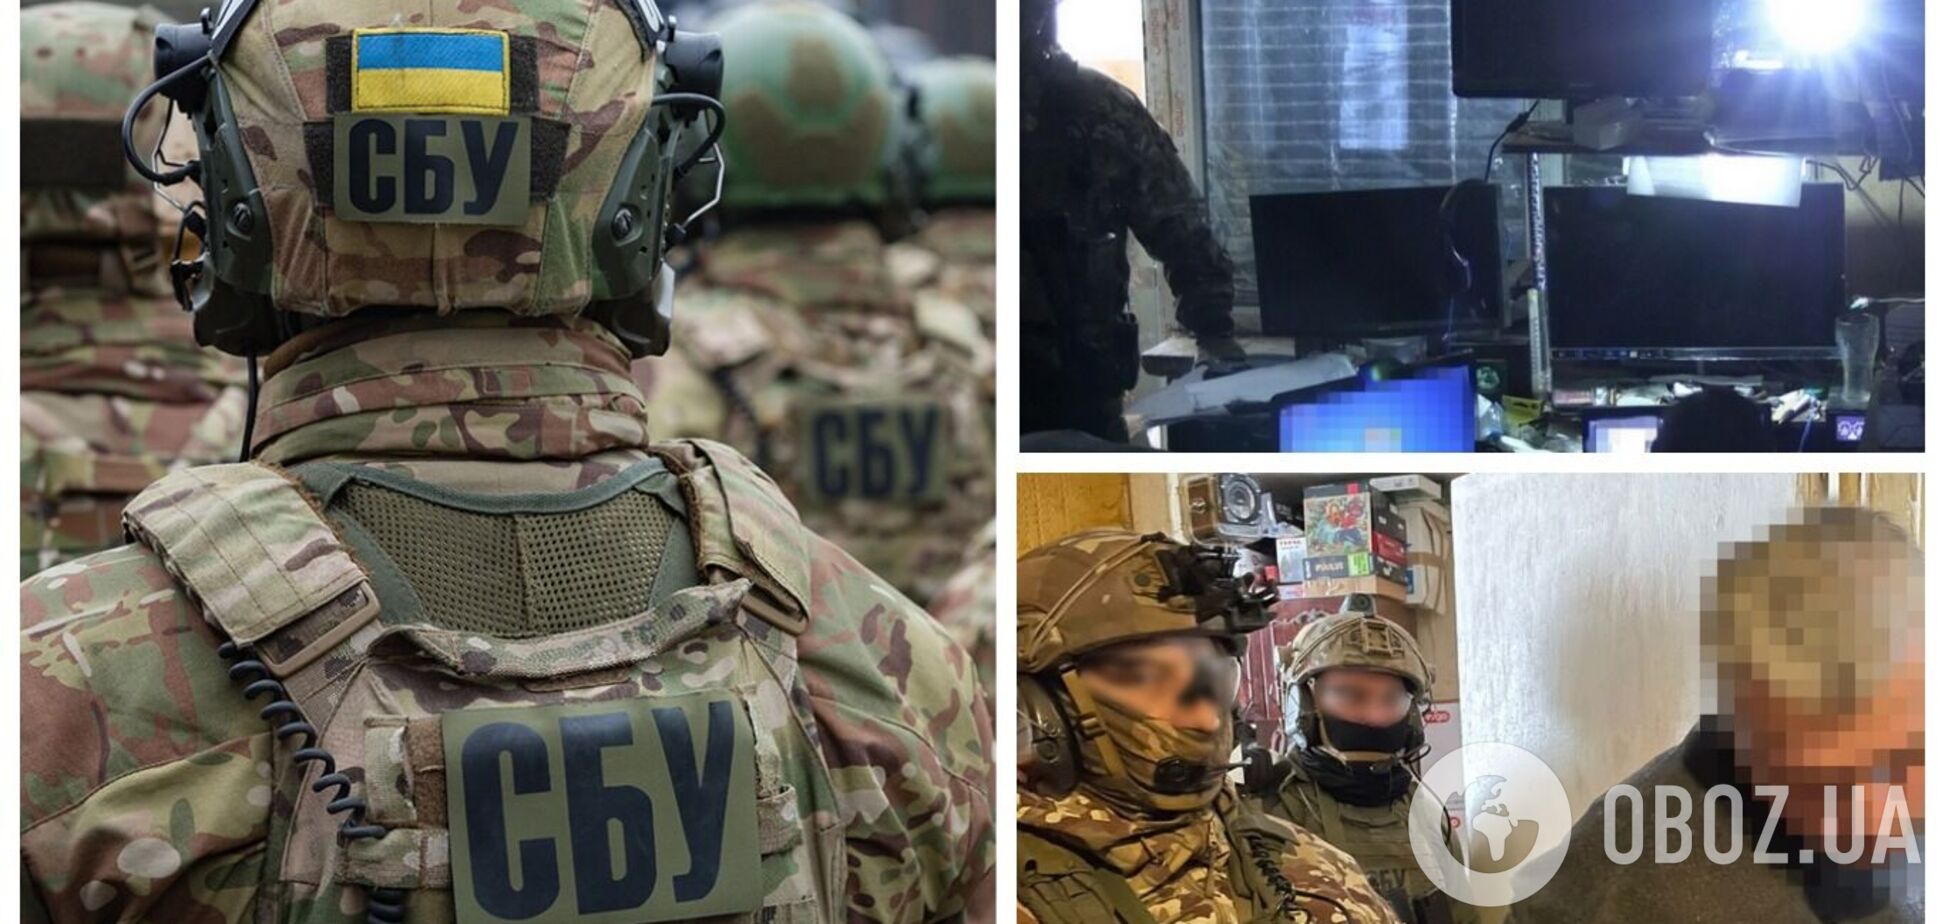 СБУ разоблачила серийного псевдоминера, который 'терроризовал' Харьков: удалось выяснить его мотив. Видео